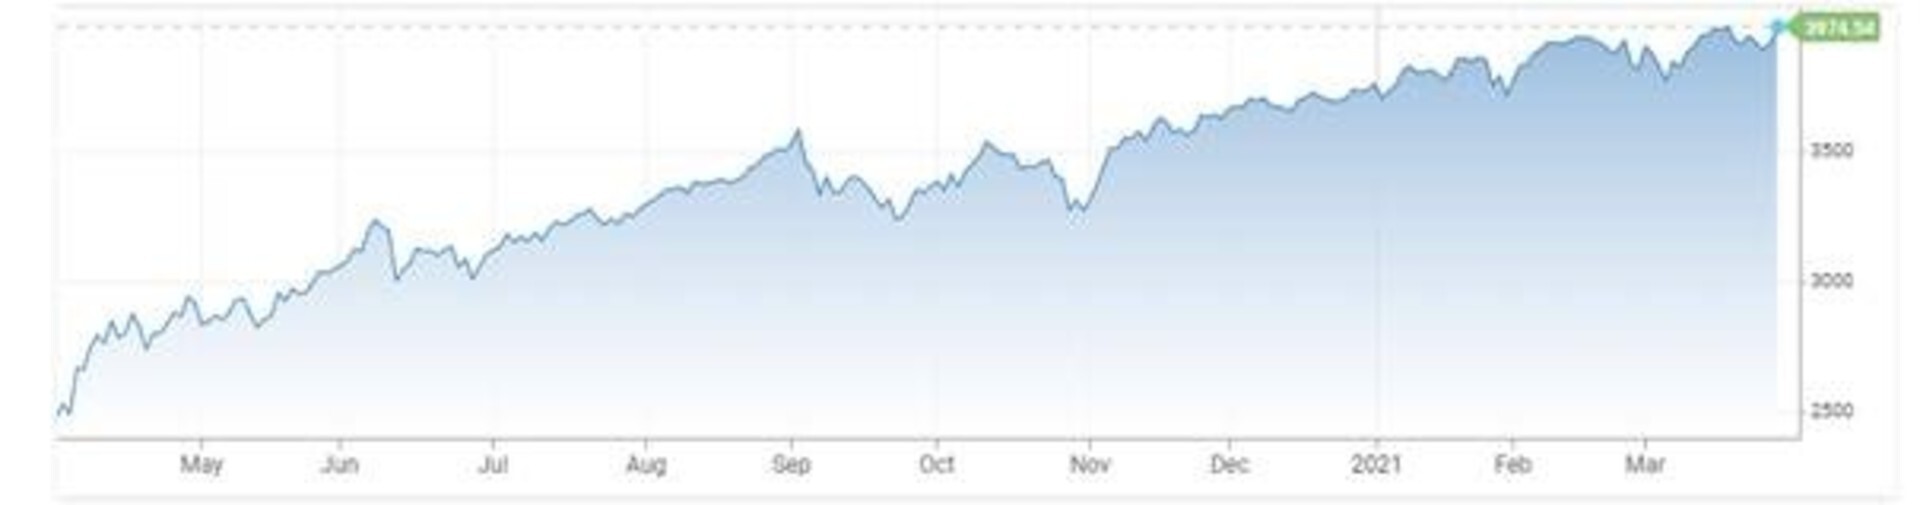 Vývoj akciového indexu S&P 500